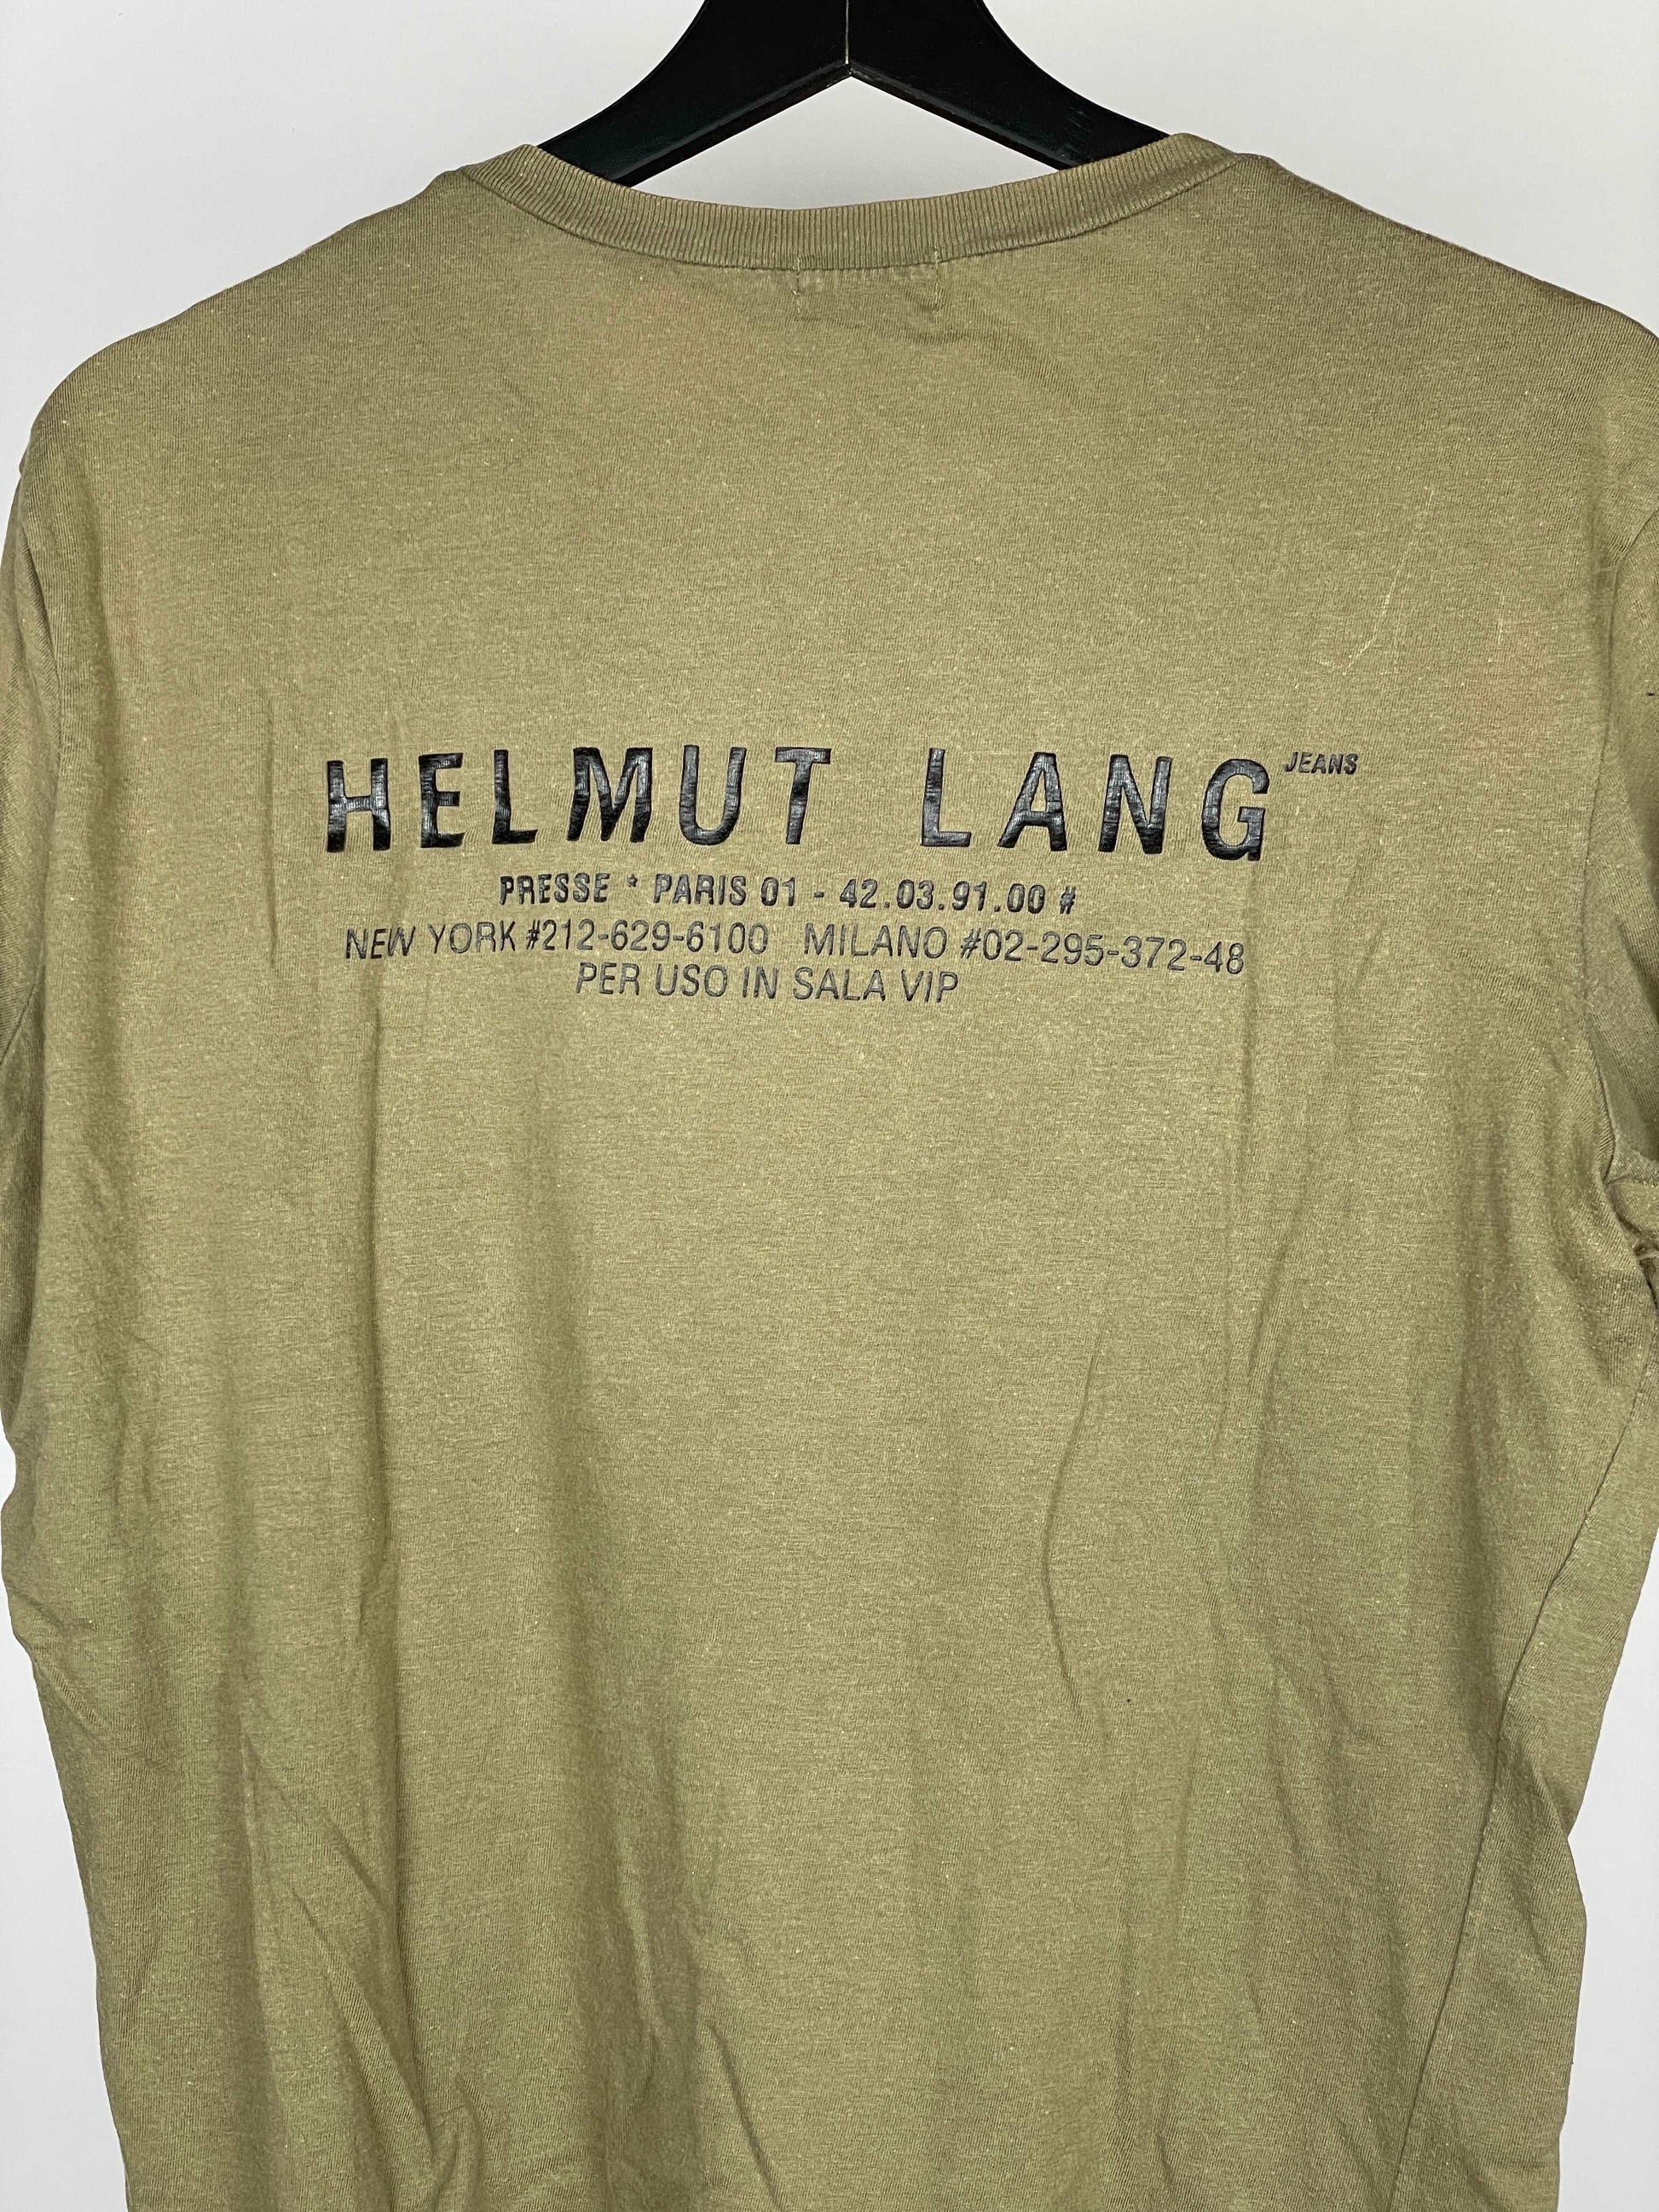 Helmut Lang 1996 Presse Tee